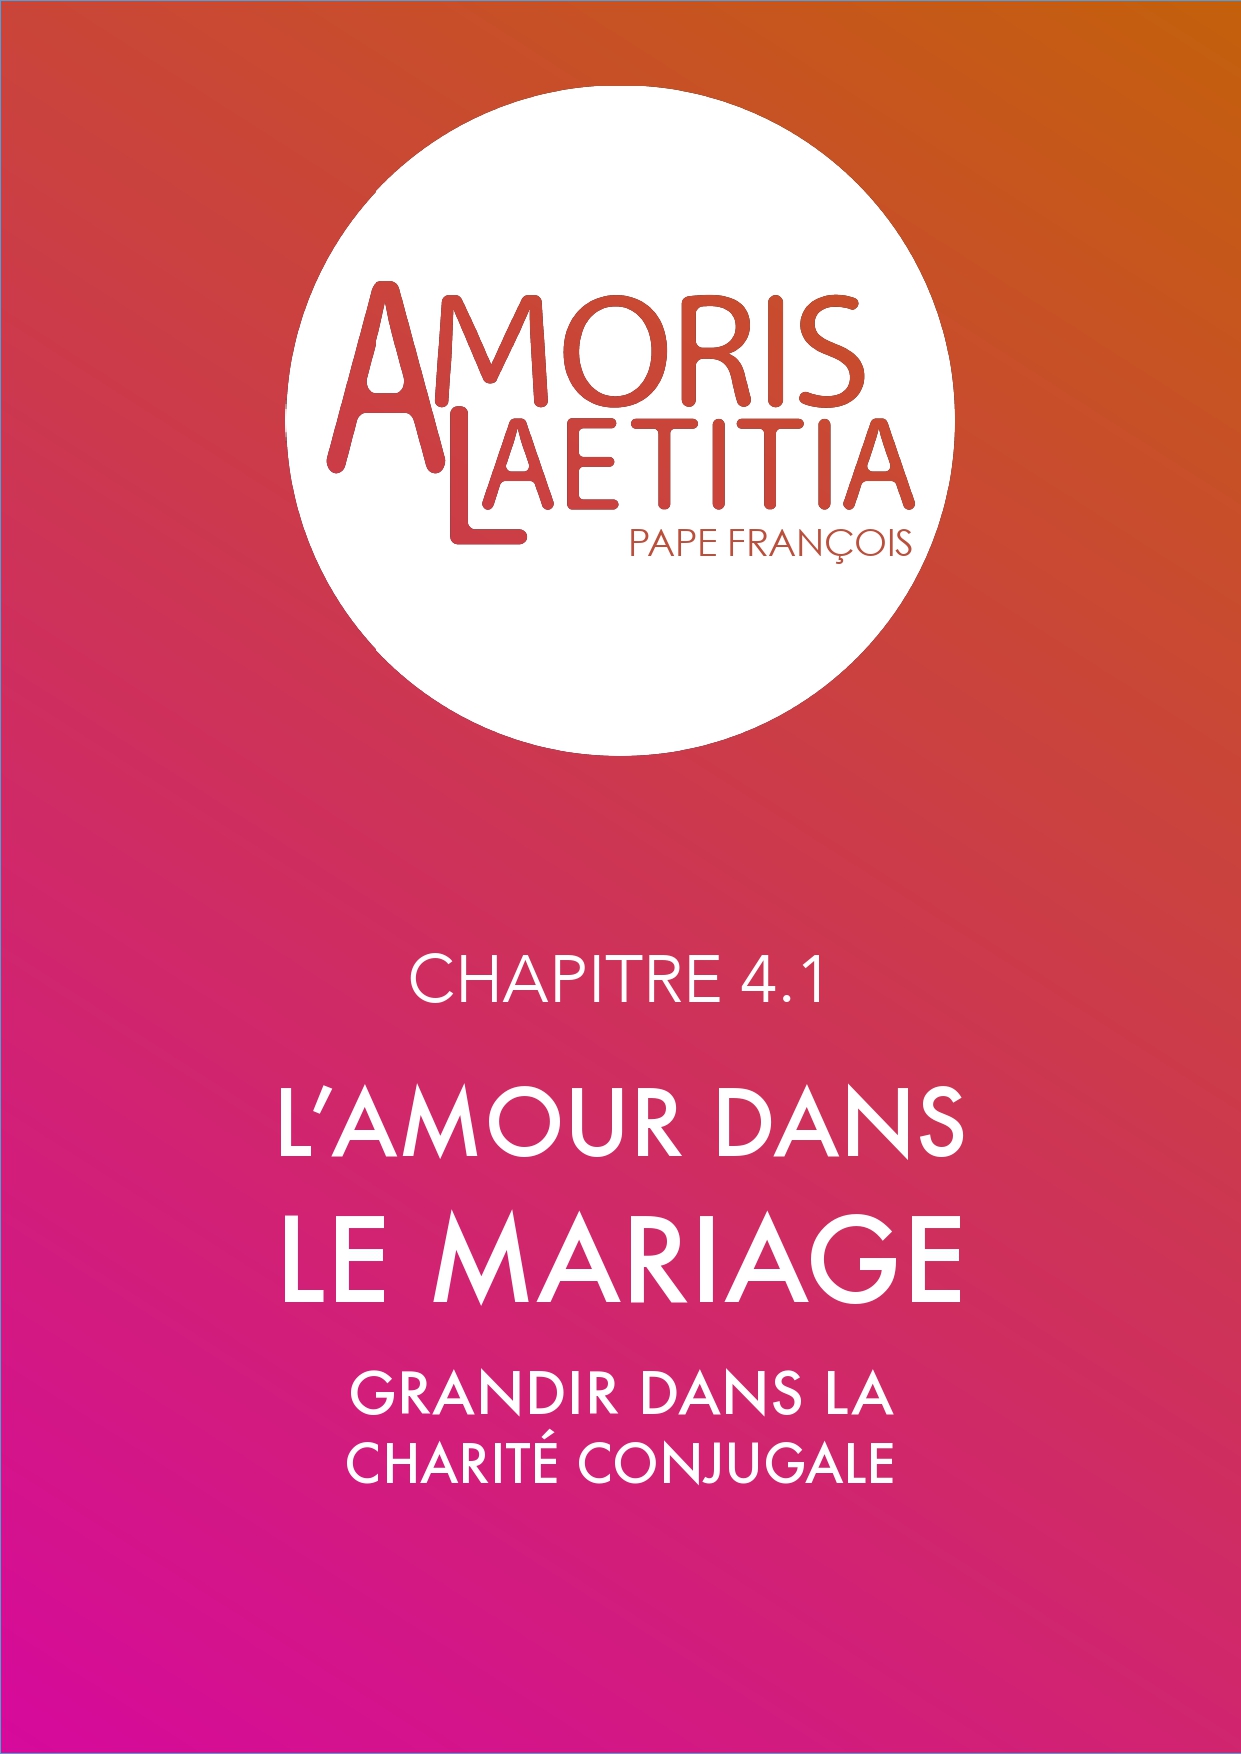 Amoris Laetitia - grandir dans la charité conjugale